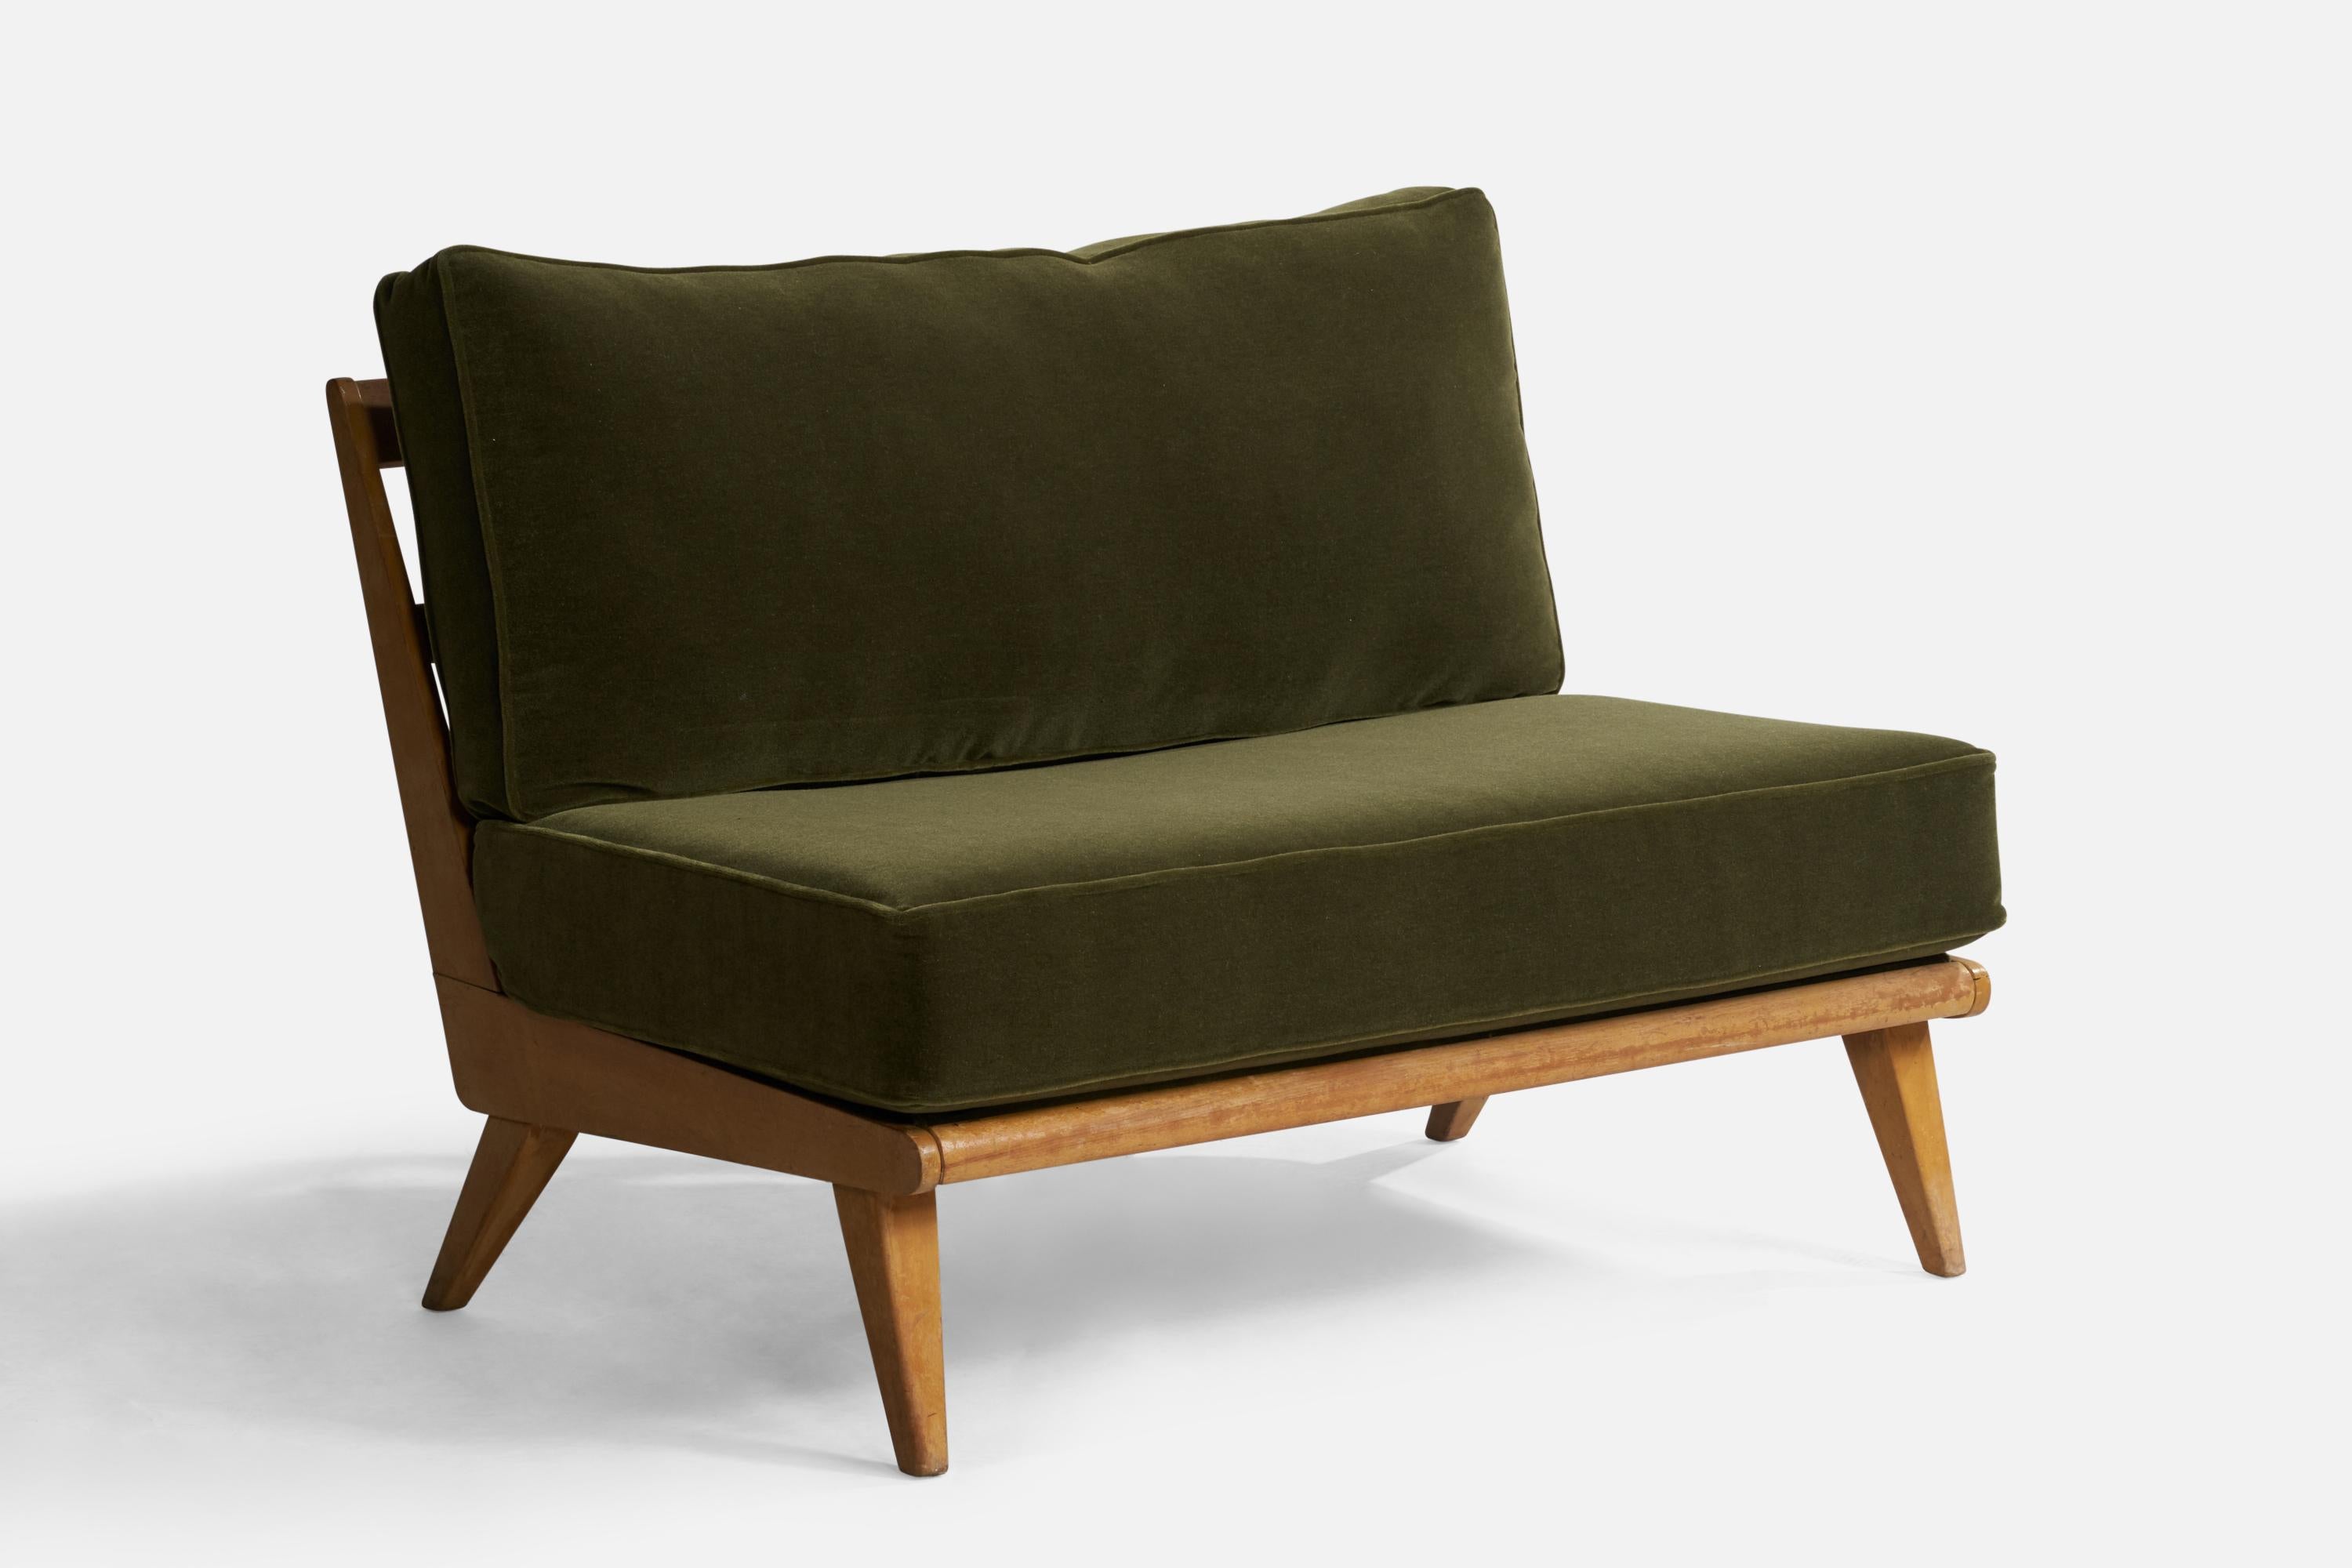 Canapé en érable et tissu mohair vert conçu et produit par Heywood Wakefield, États-Unis, années 1950.

Hauteur du siège 18.5